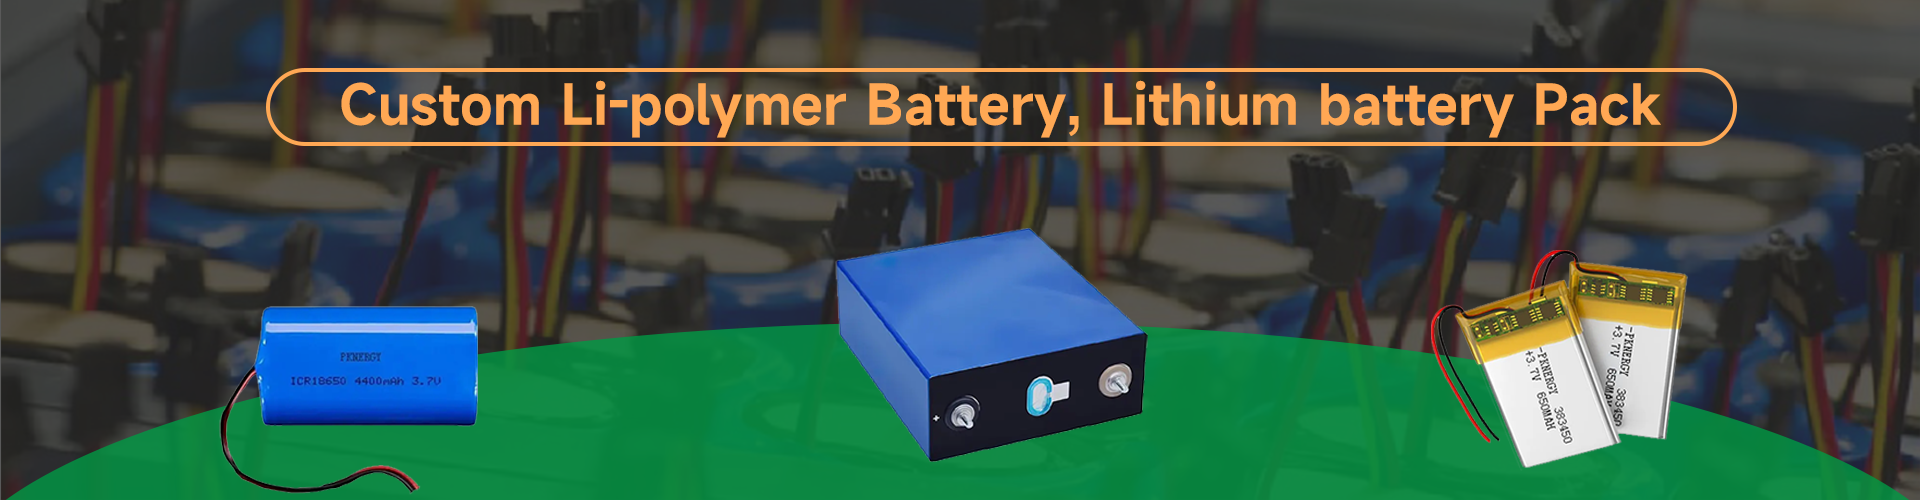 Batería de polímero de litio personalizada y batería de iones de litio